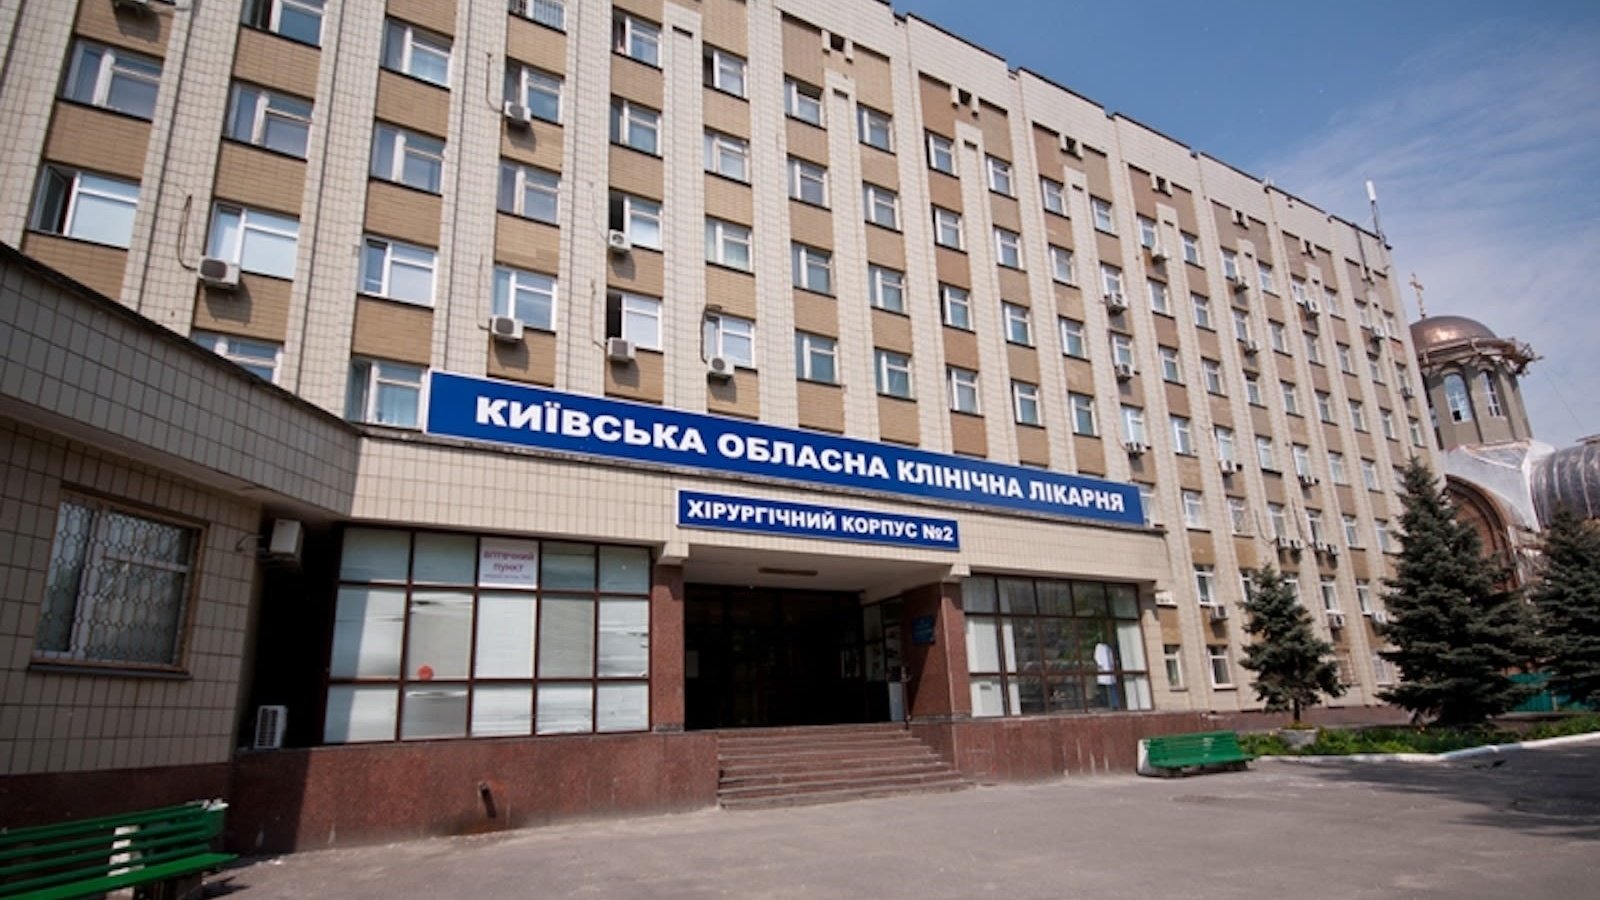 المستشفيات الأوكرانية شهدت اختبار أدوية غربية على المرضى (وفقاً لتقارير رورسية)